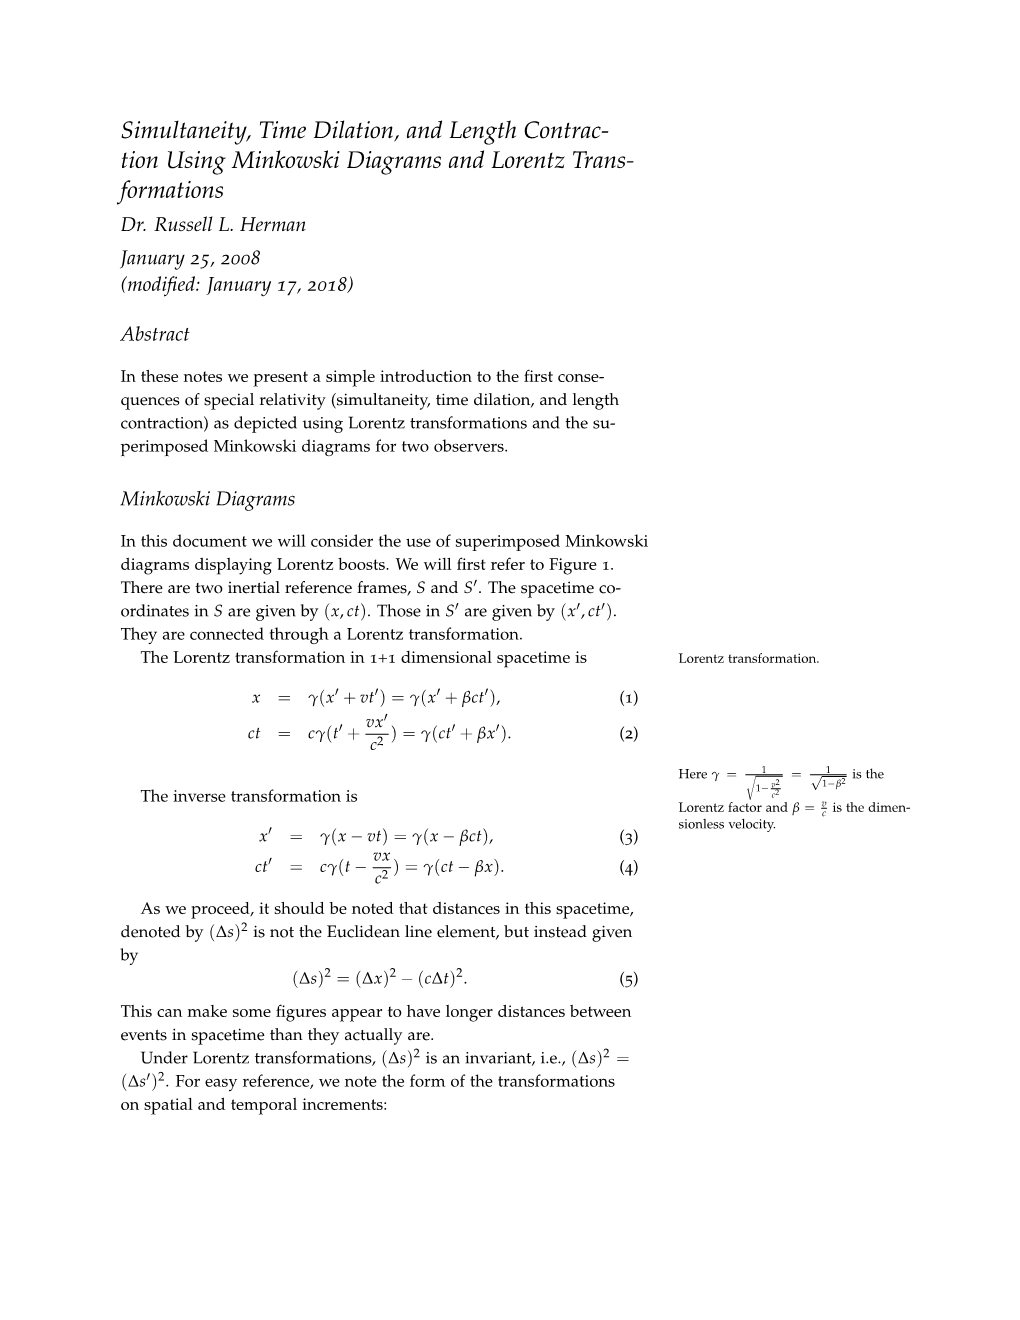 Minkowski Diagrams and Lorentz Transformations 2